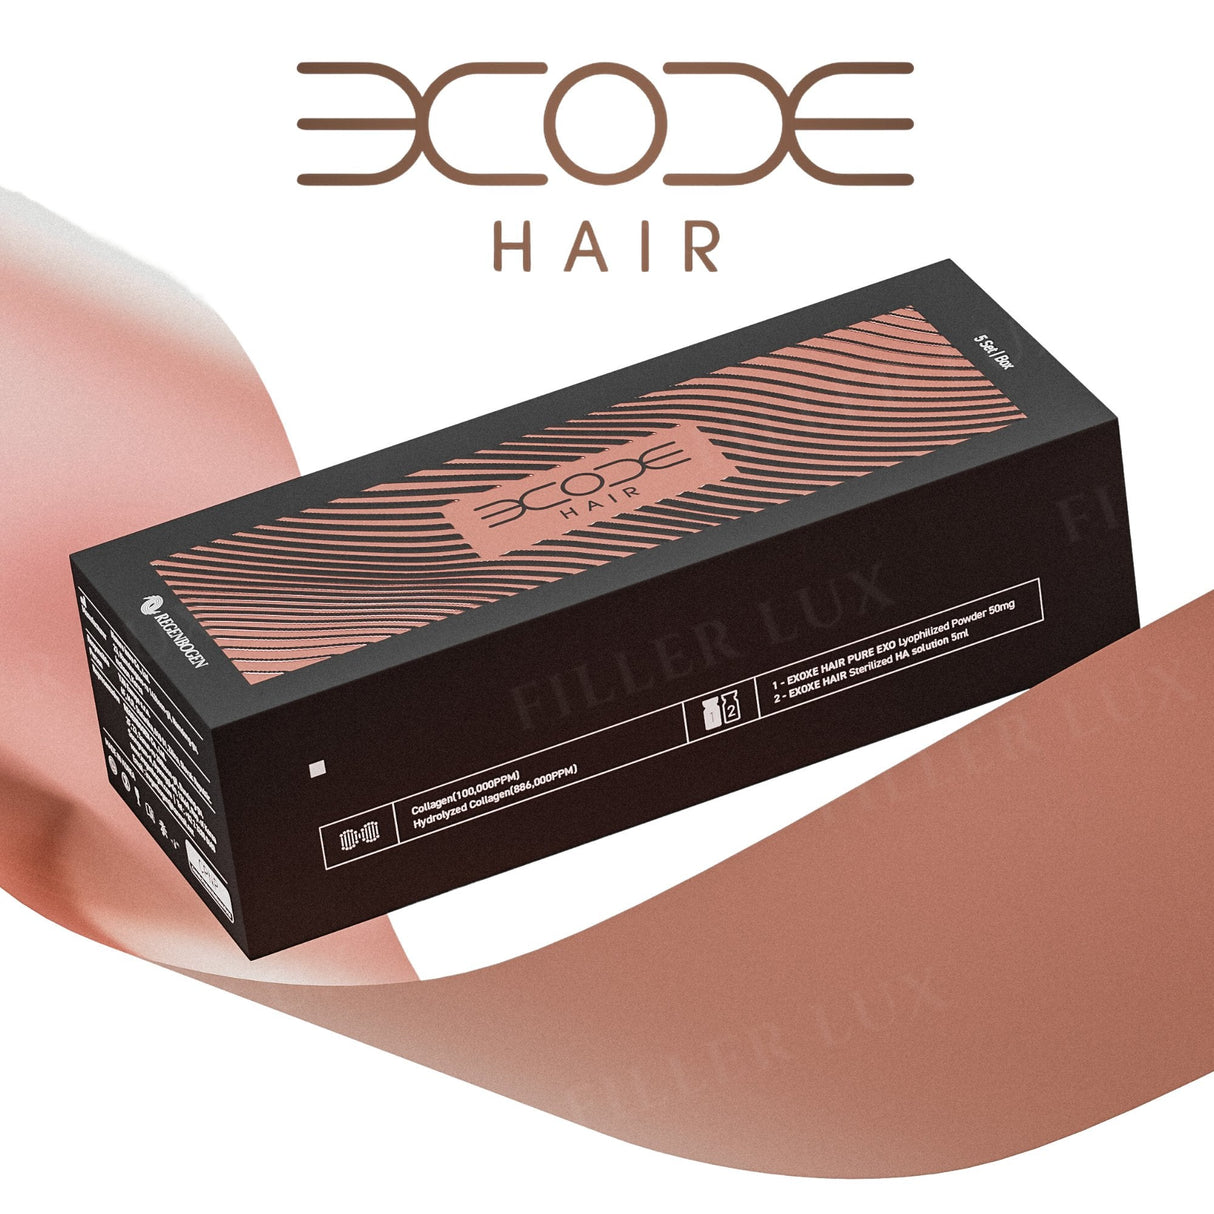 EXOXE Hair - Filler Lux™